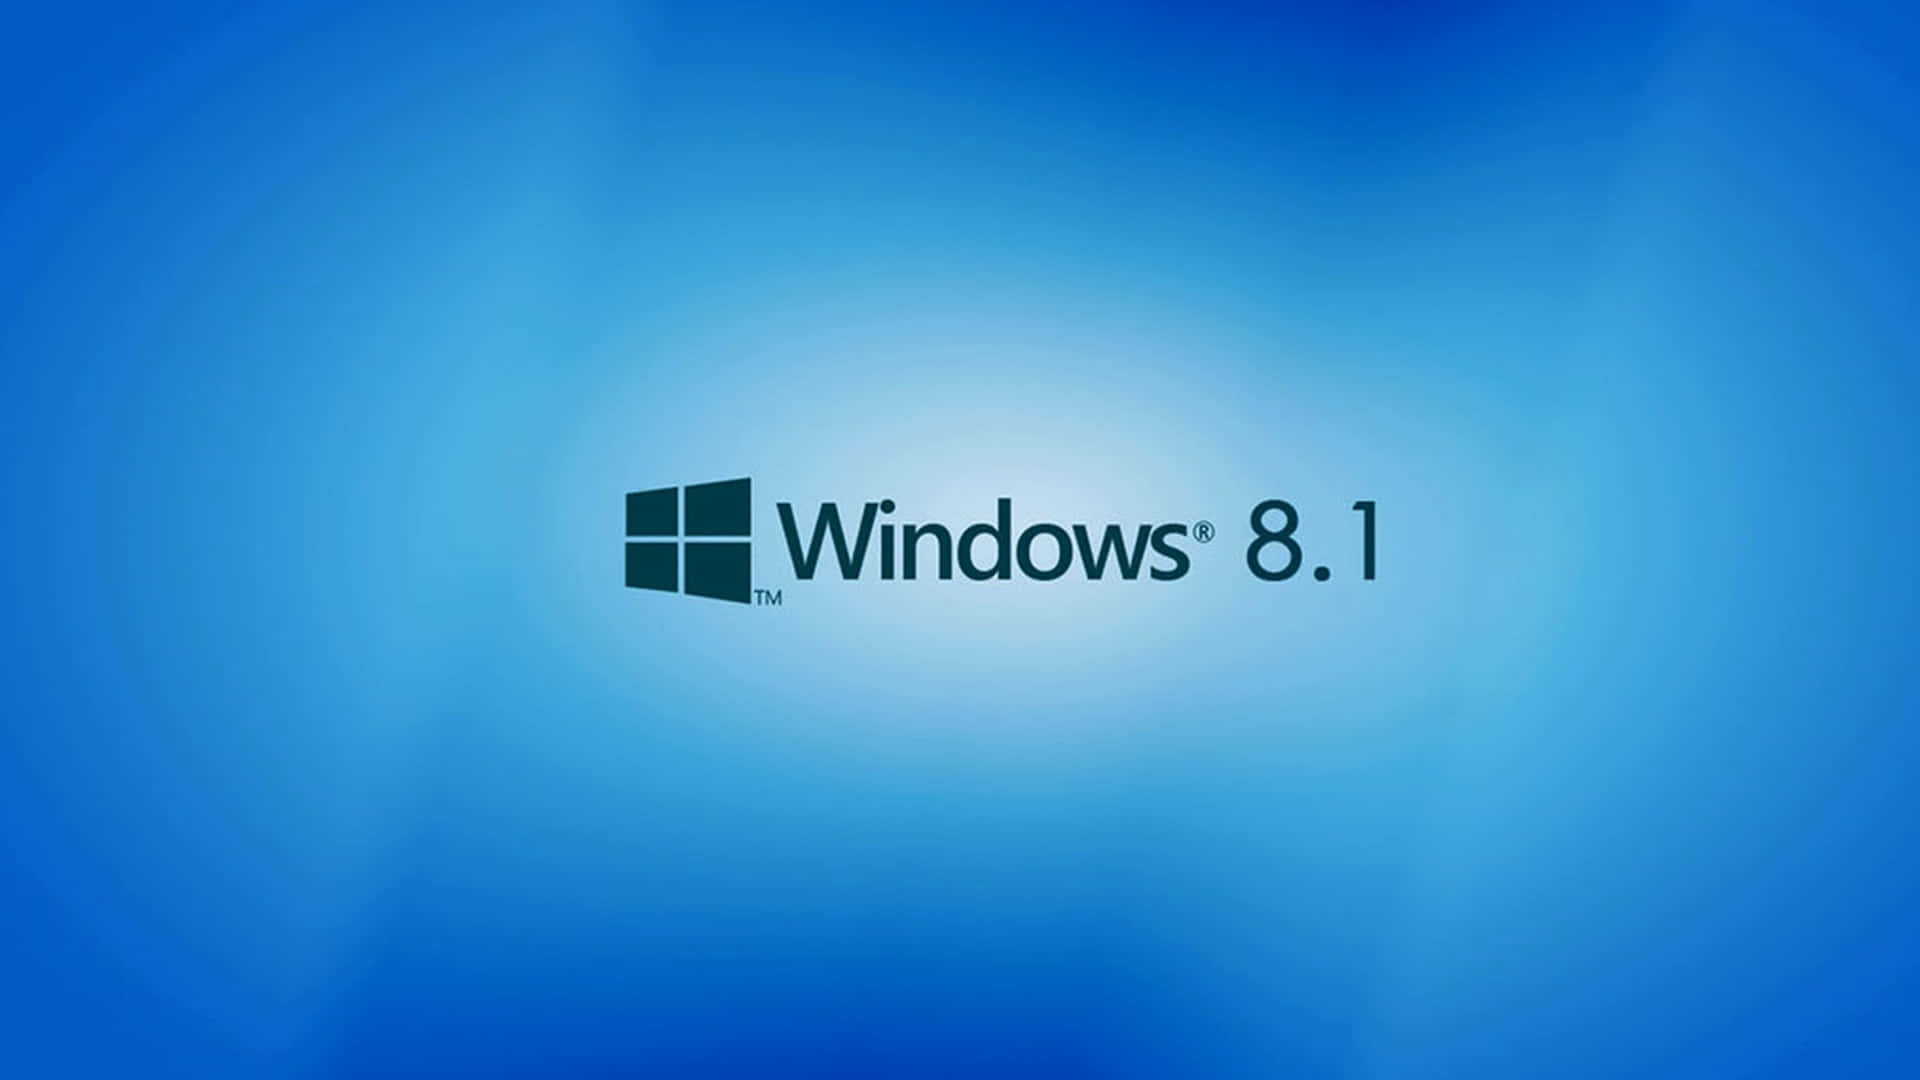 Classic Blue Windows 8.1